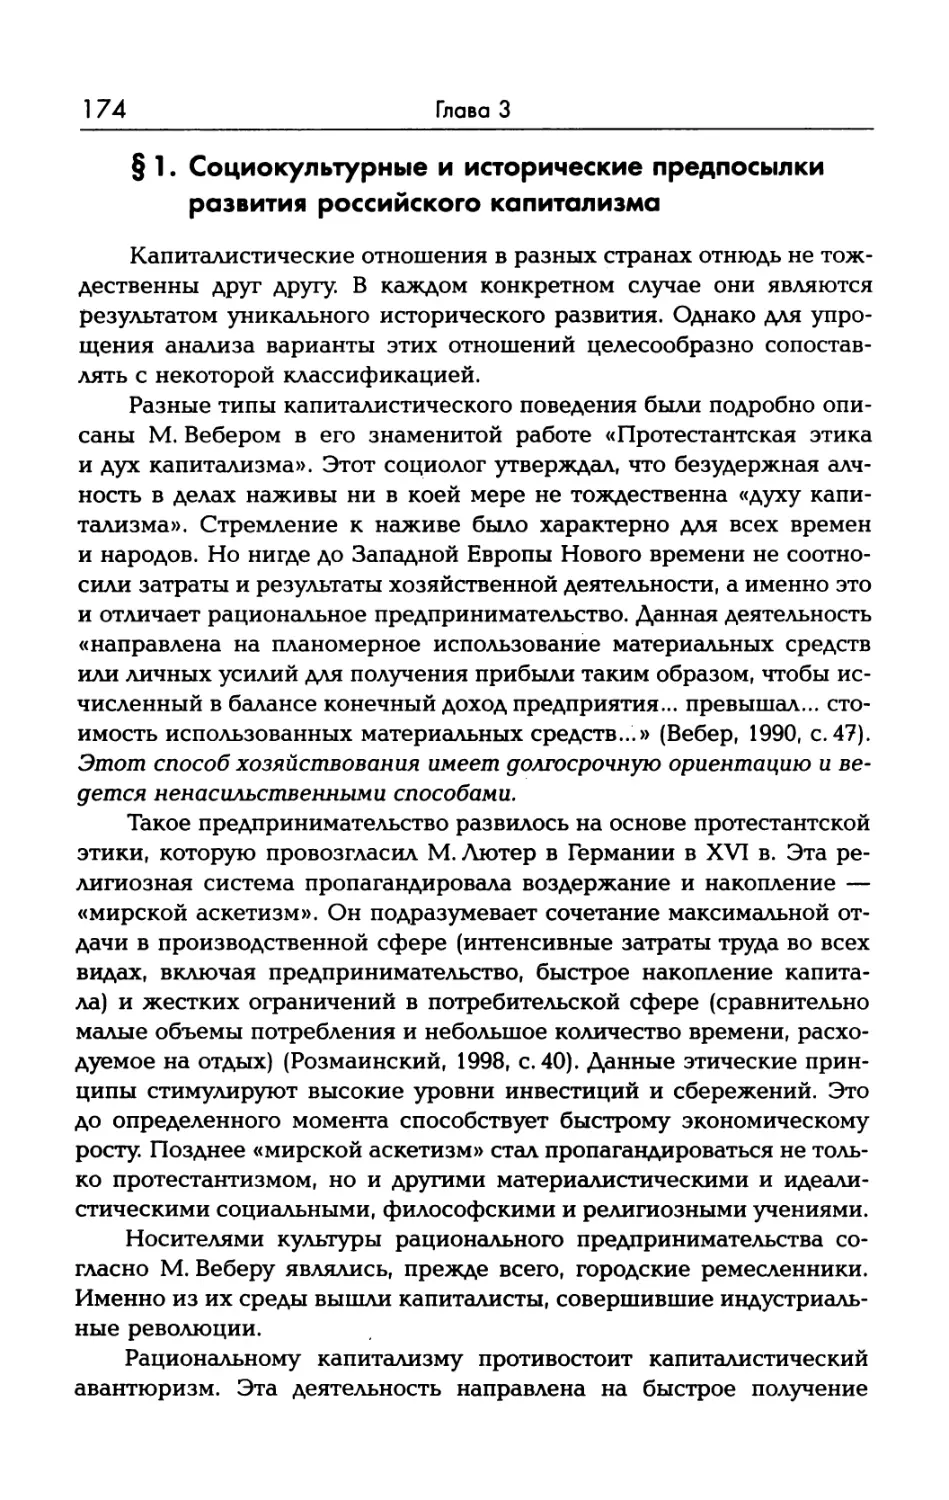 § 1. Социокультурные и исторические предпосылки развития российского капитализма